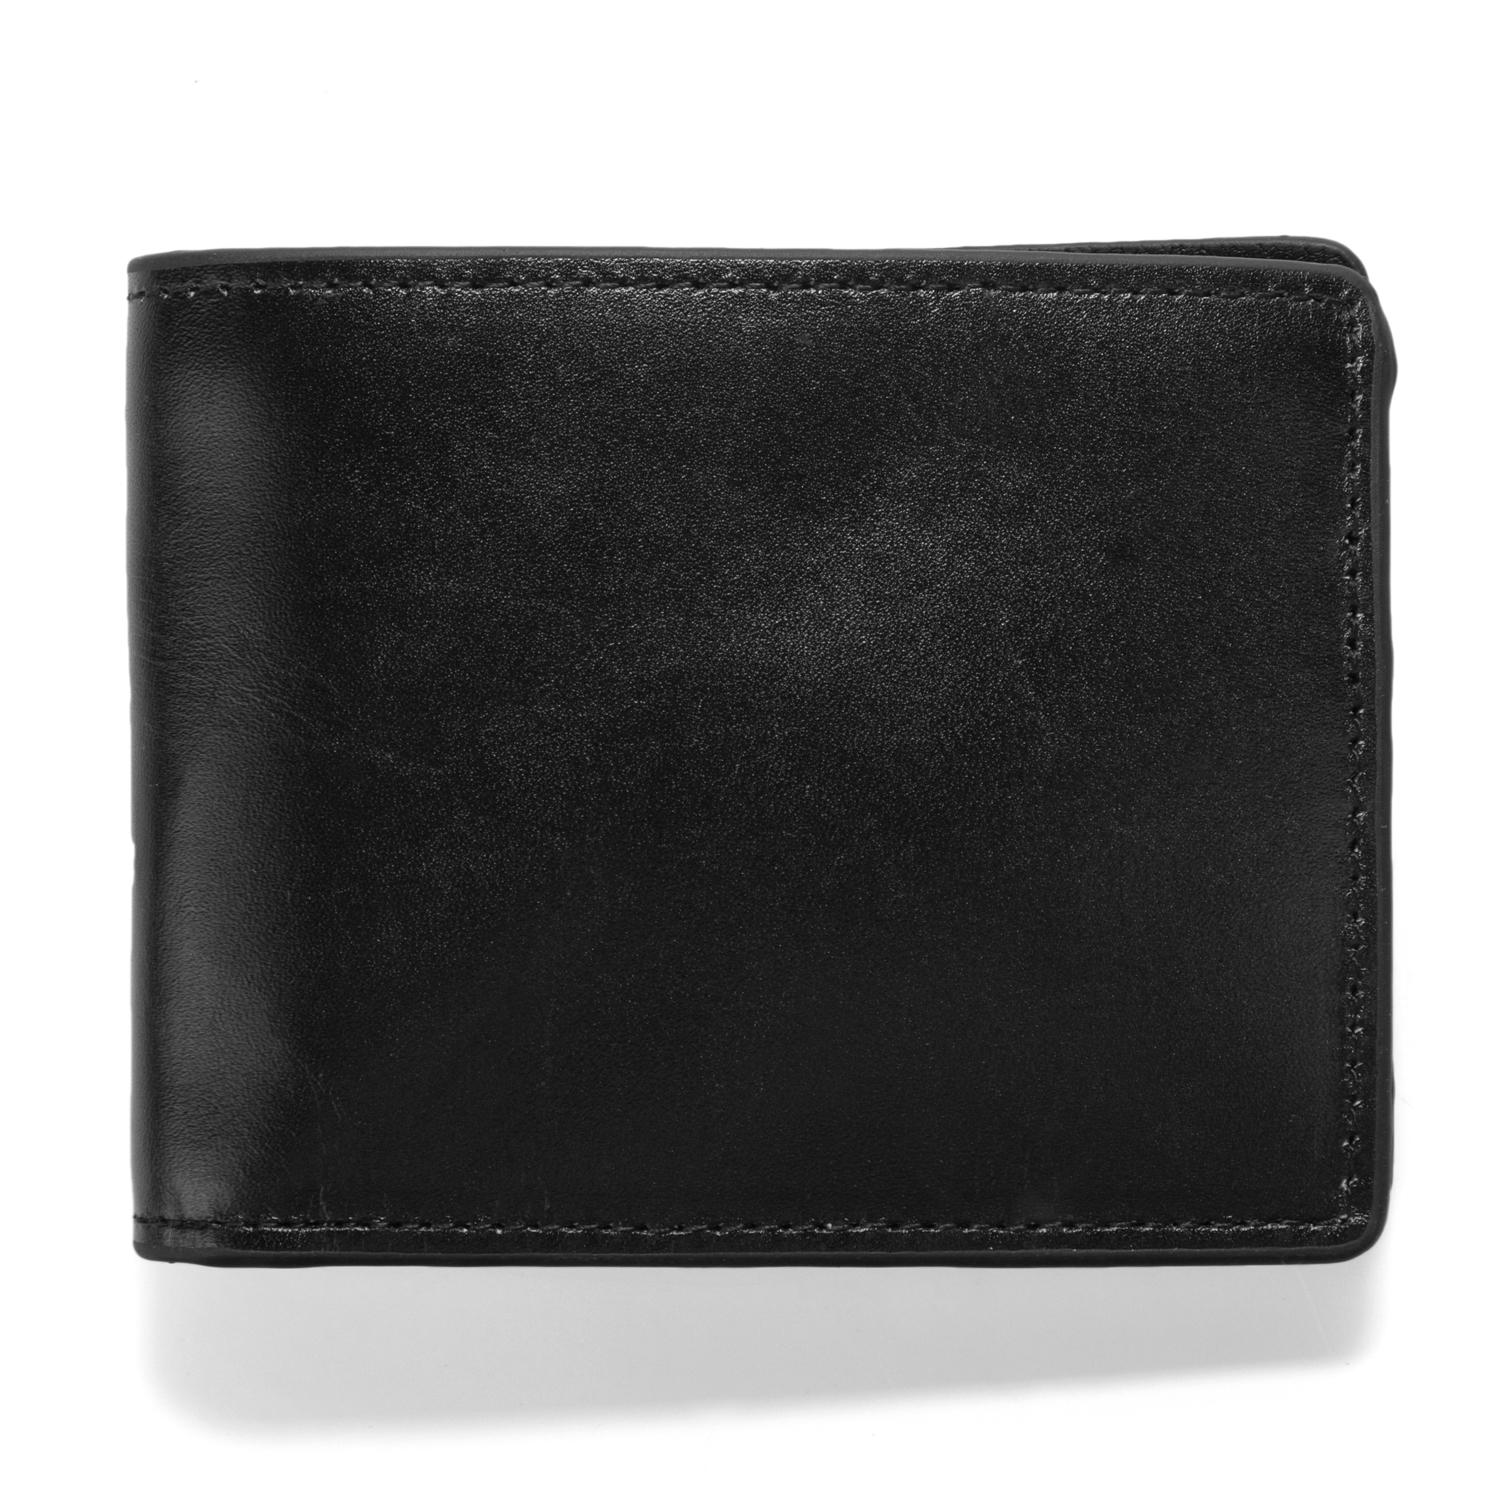 J.FOLD Leather Wallet Havana - Black